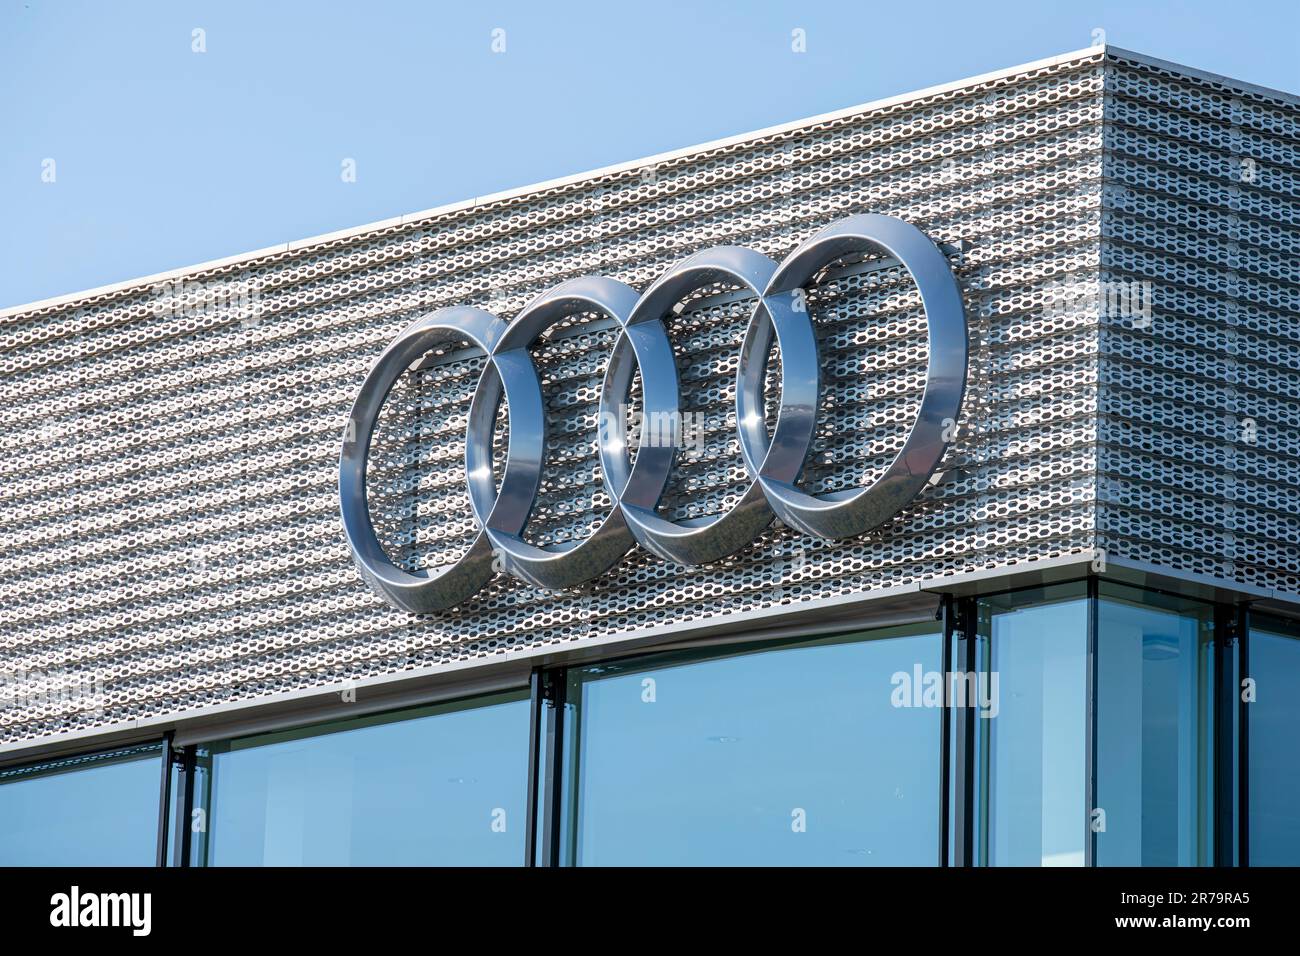 Dettaglio di una concessionaria di Audi con il logo del marchio Foto Stock